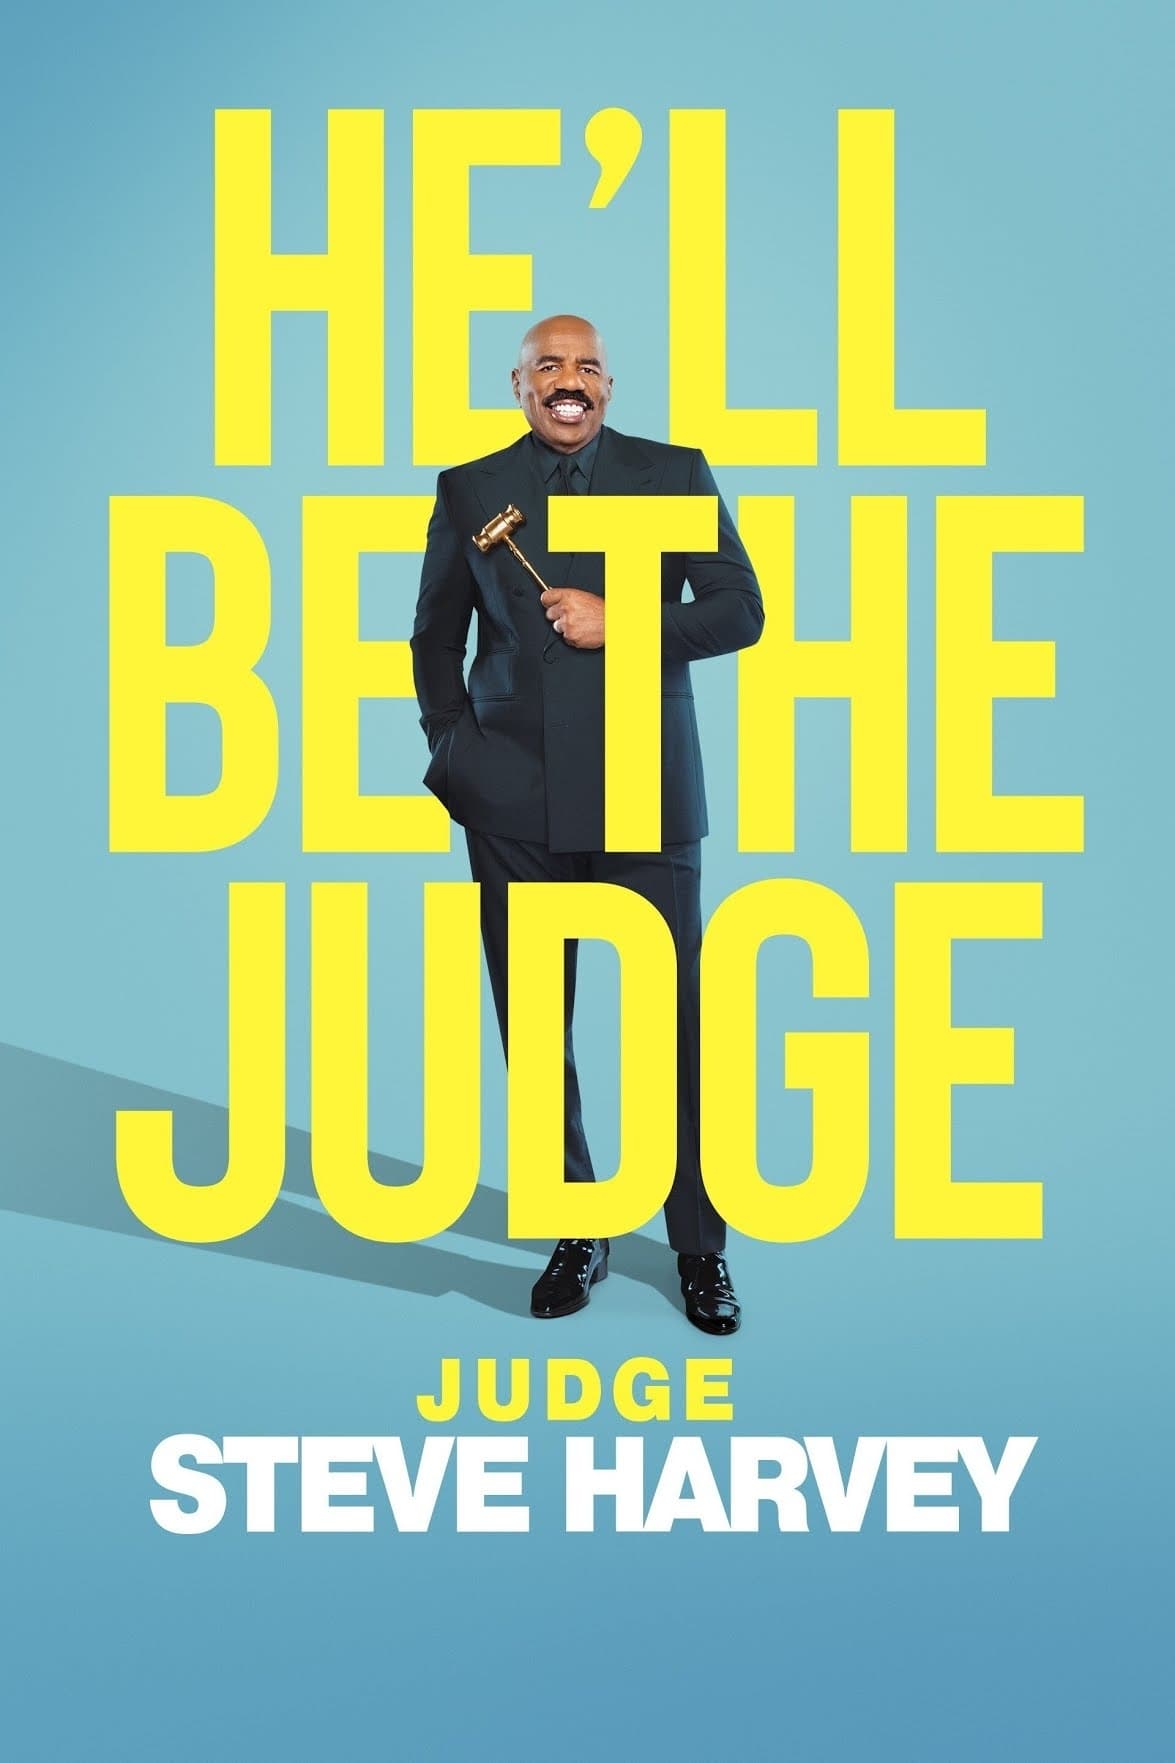 Judge Steve Harvey TV Shows About Money